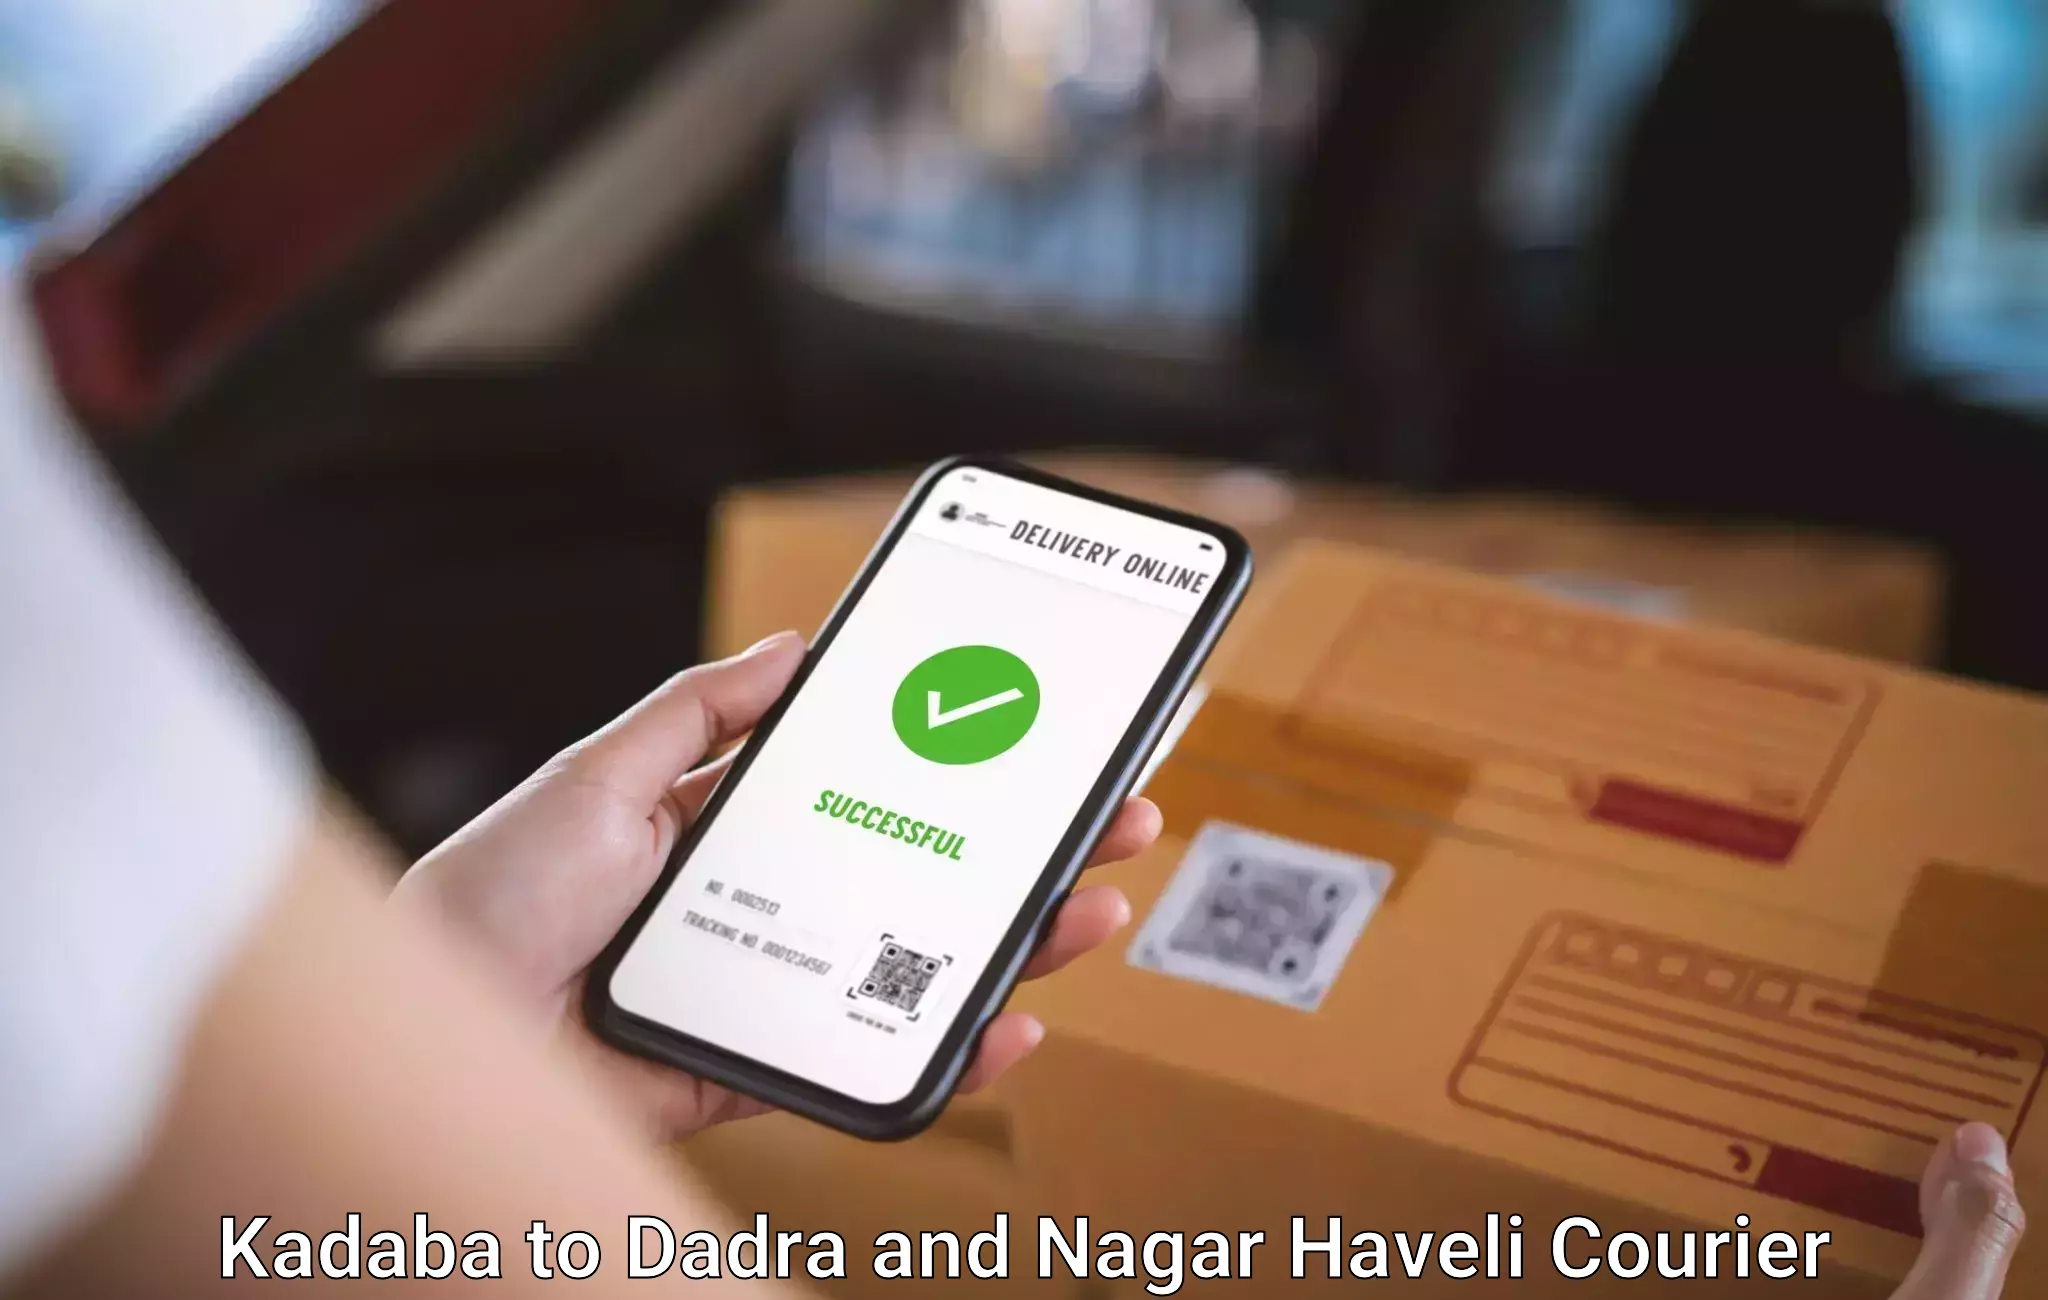 Airport luggage delivery Kadaba to Dadra and Nagar Haveli